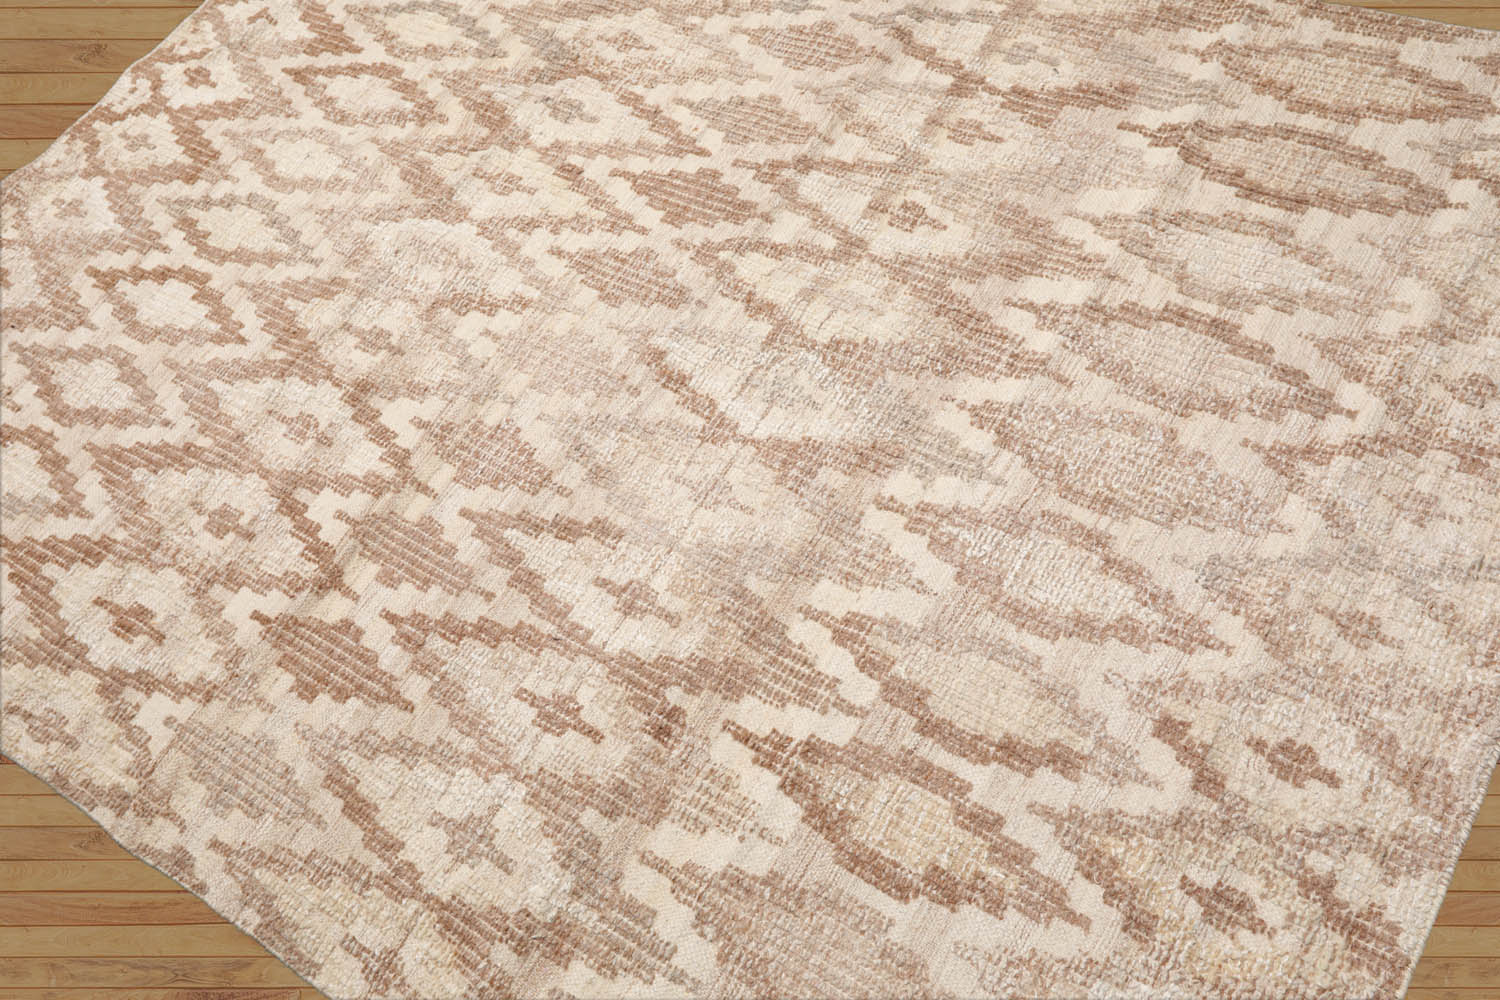 Nielsville LoomBloom 5x8 Oriental Beige Hand Woven Southwestern Kilim Wool Area Rug